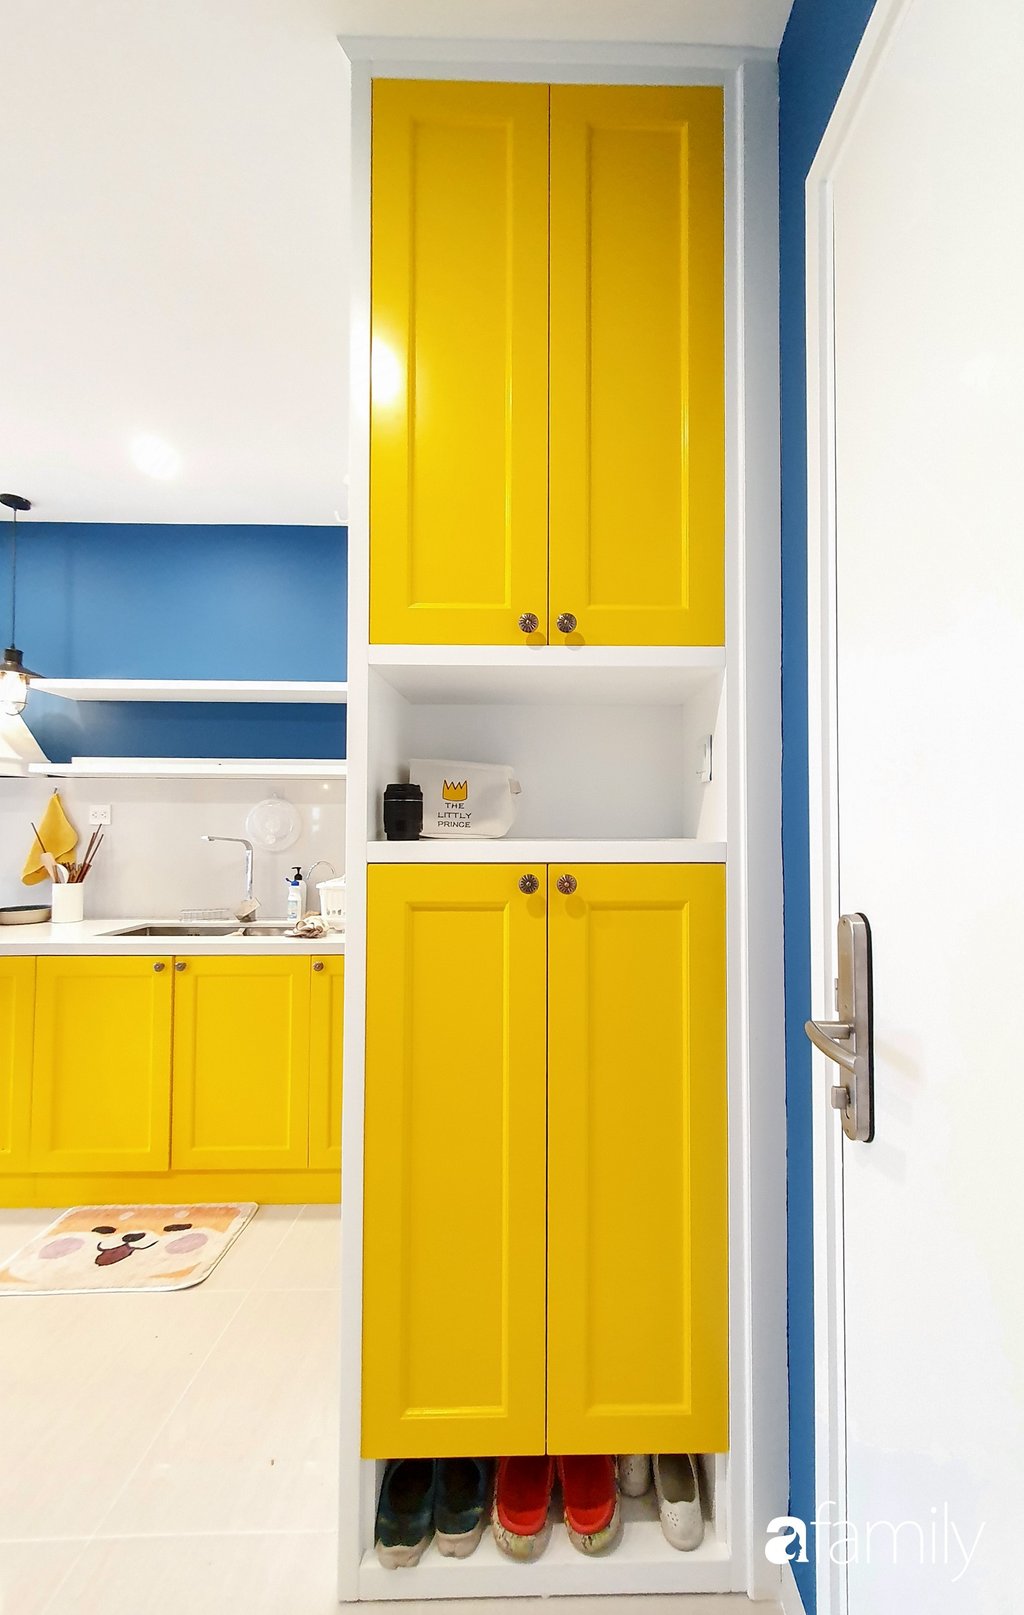 Khoảng tường đối diện với sofa được sơn màu vàng kết nối với bức tường phòng ăn và bếp nấu. Sự liên kết màu sắc tạo nên sự hài hòa về tổng thể cũng như tạo cảm giác ưa nhìn cho từng không gian nhỏ.